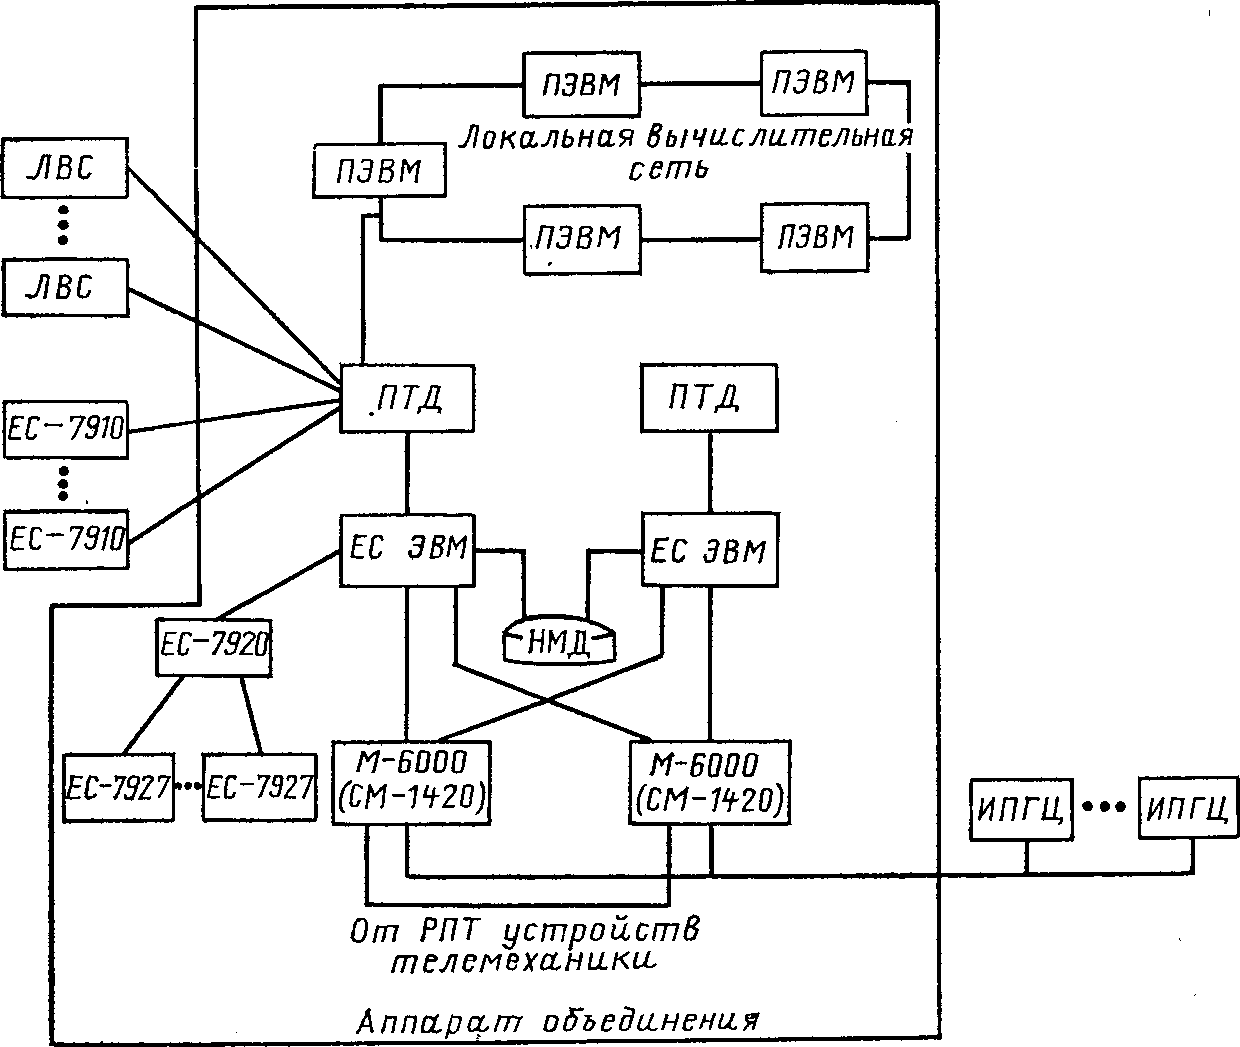 Структурная схема вычислительной сети